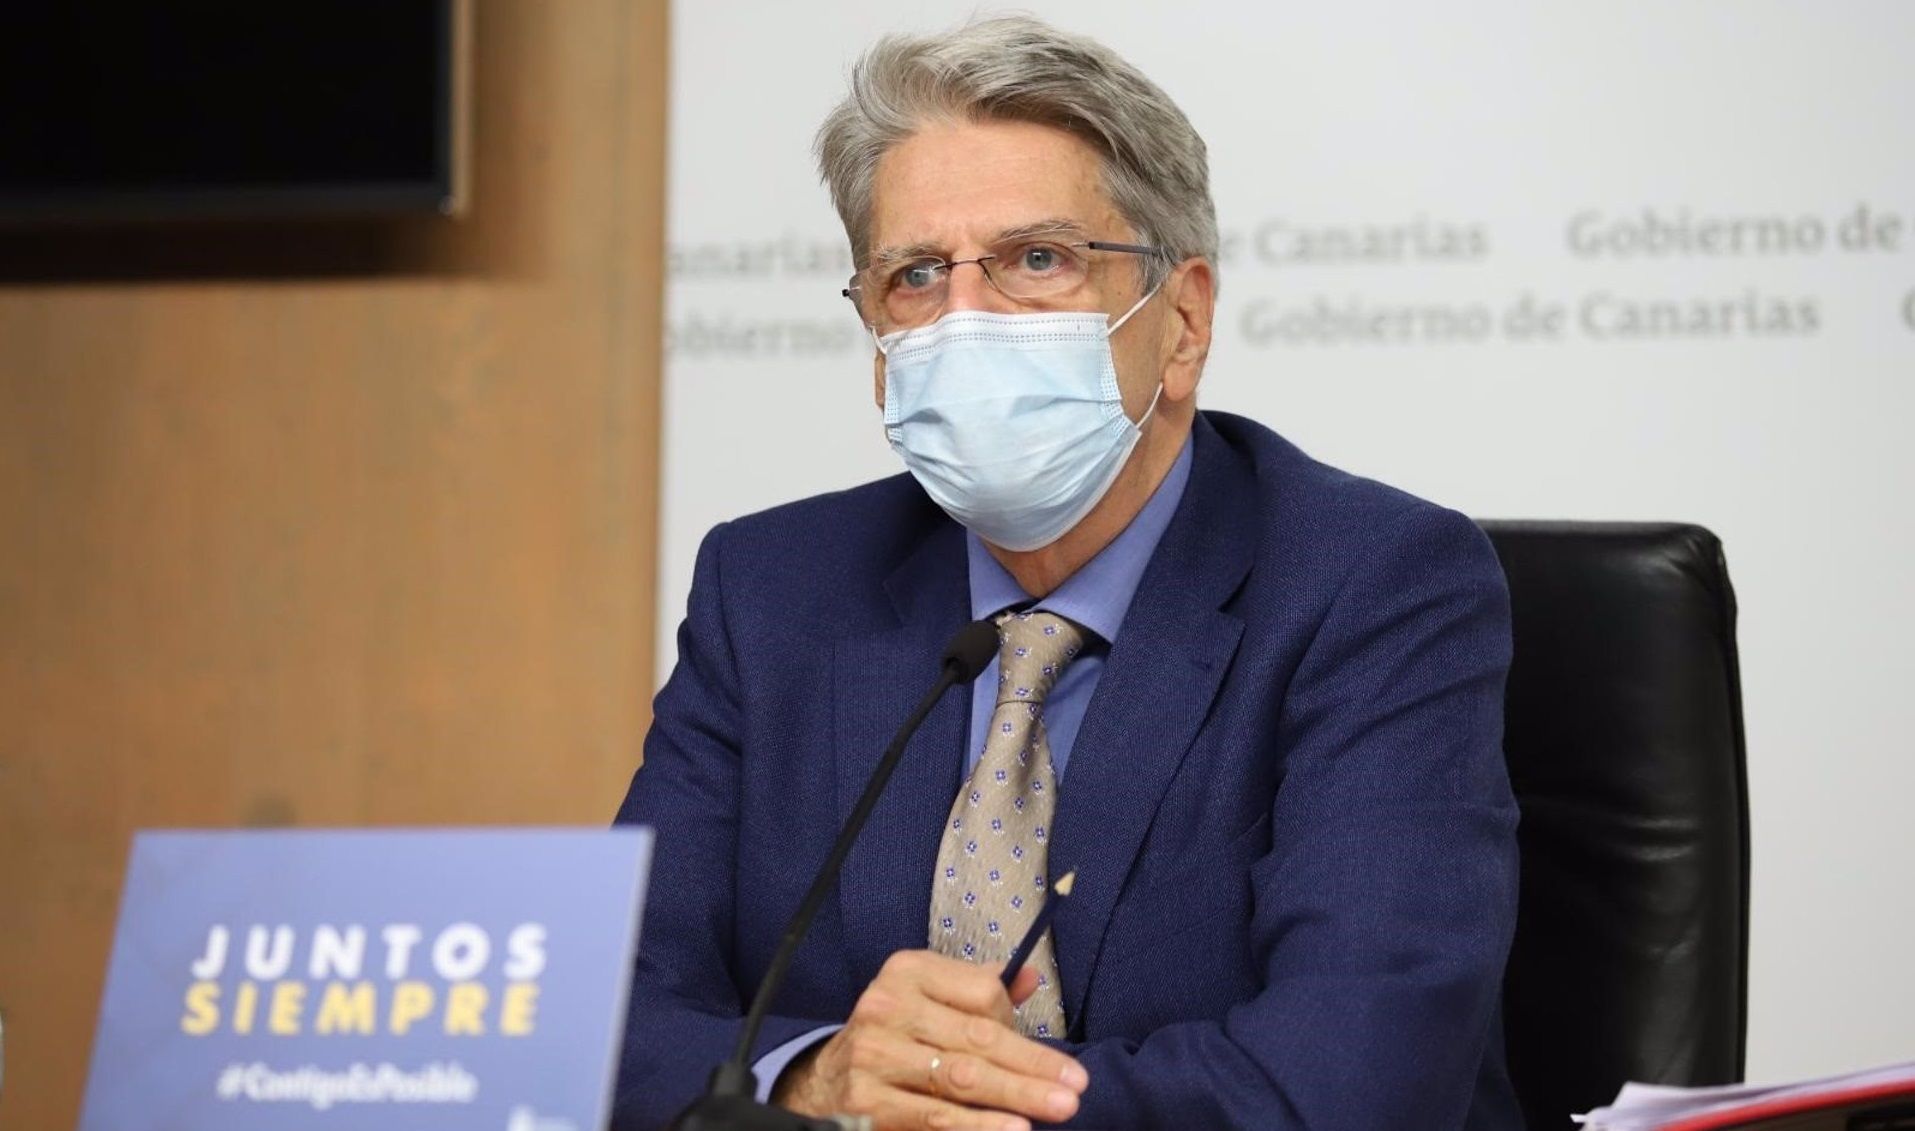 El portavoz del Gobierno de Canarias, Julio Pérez